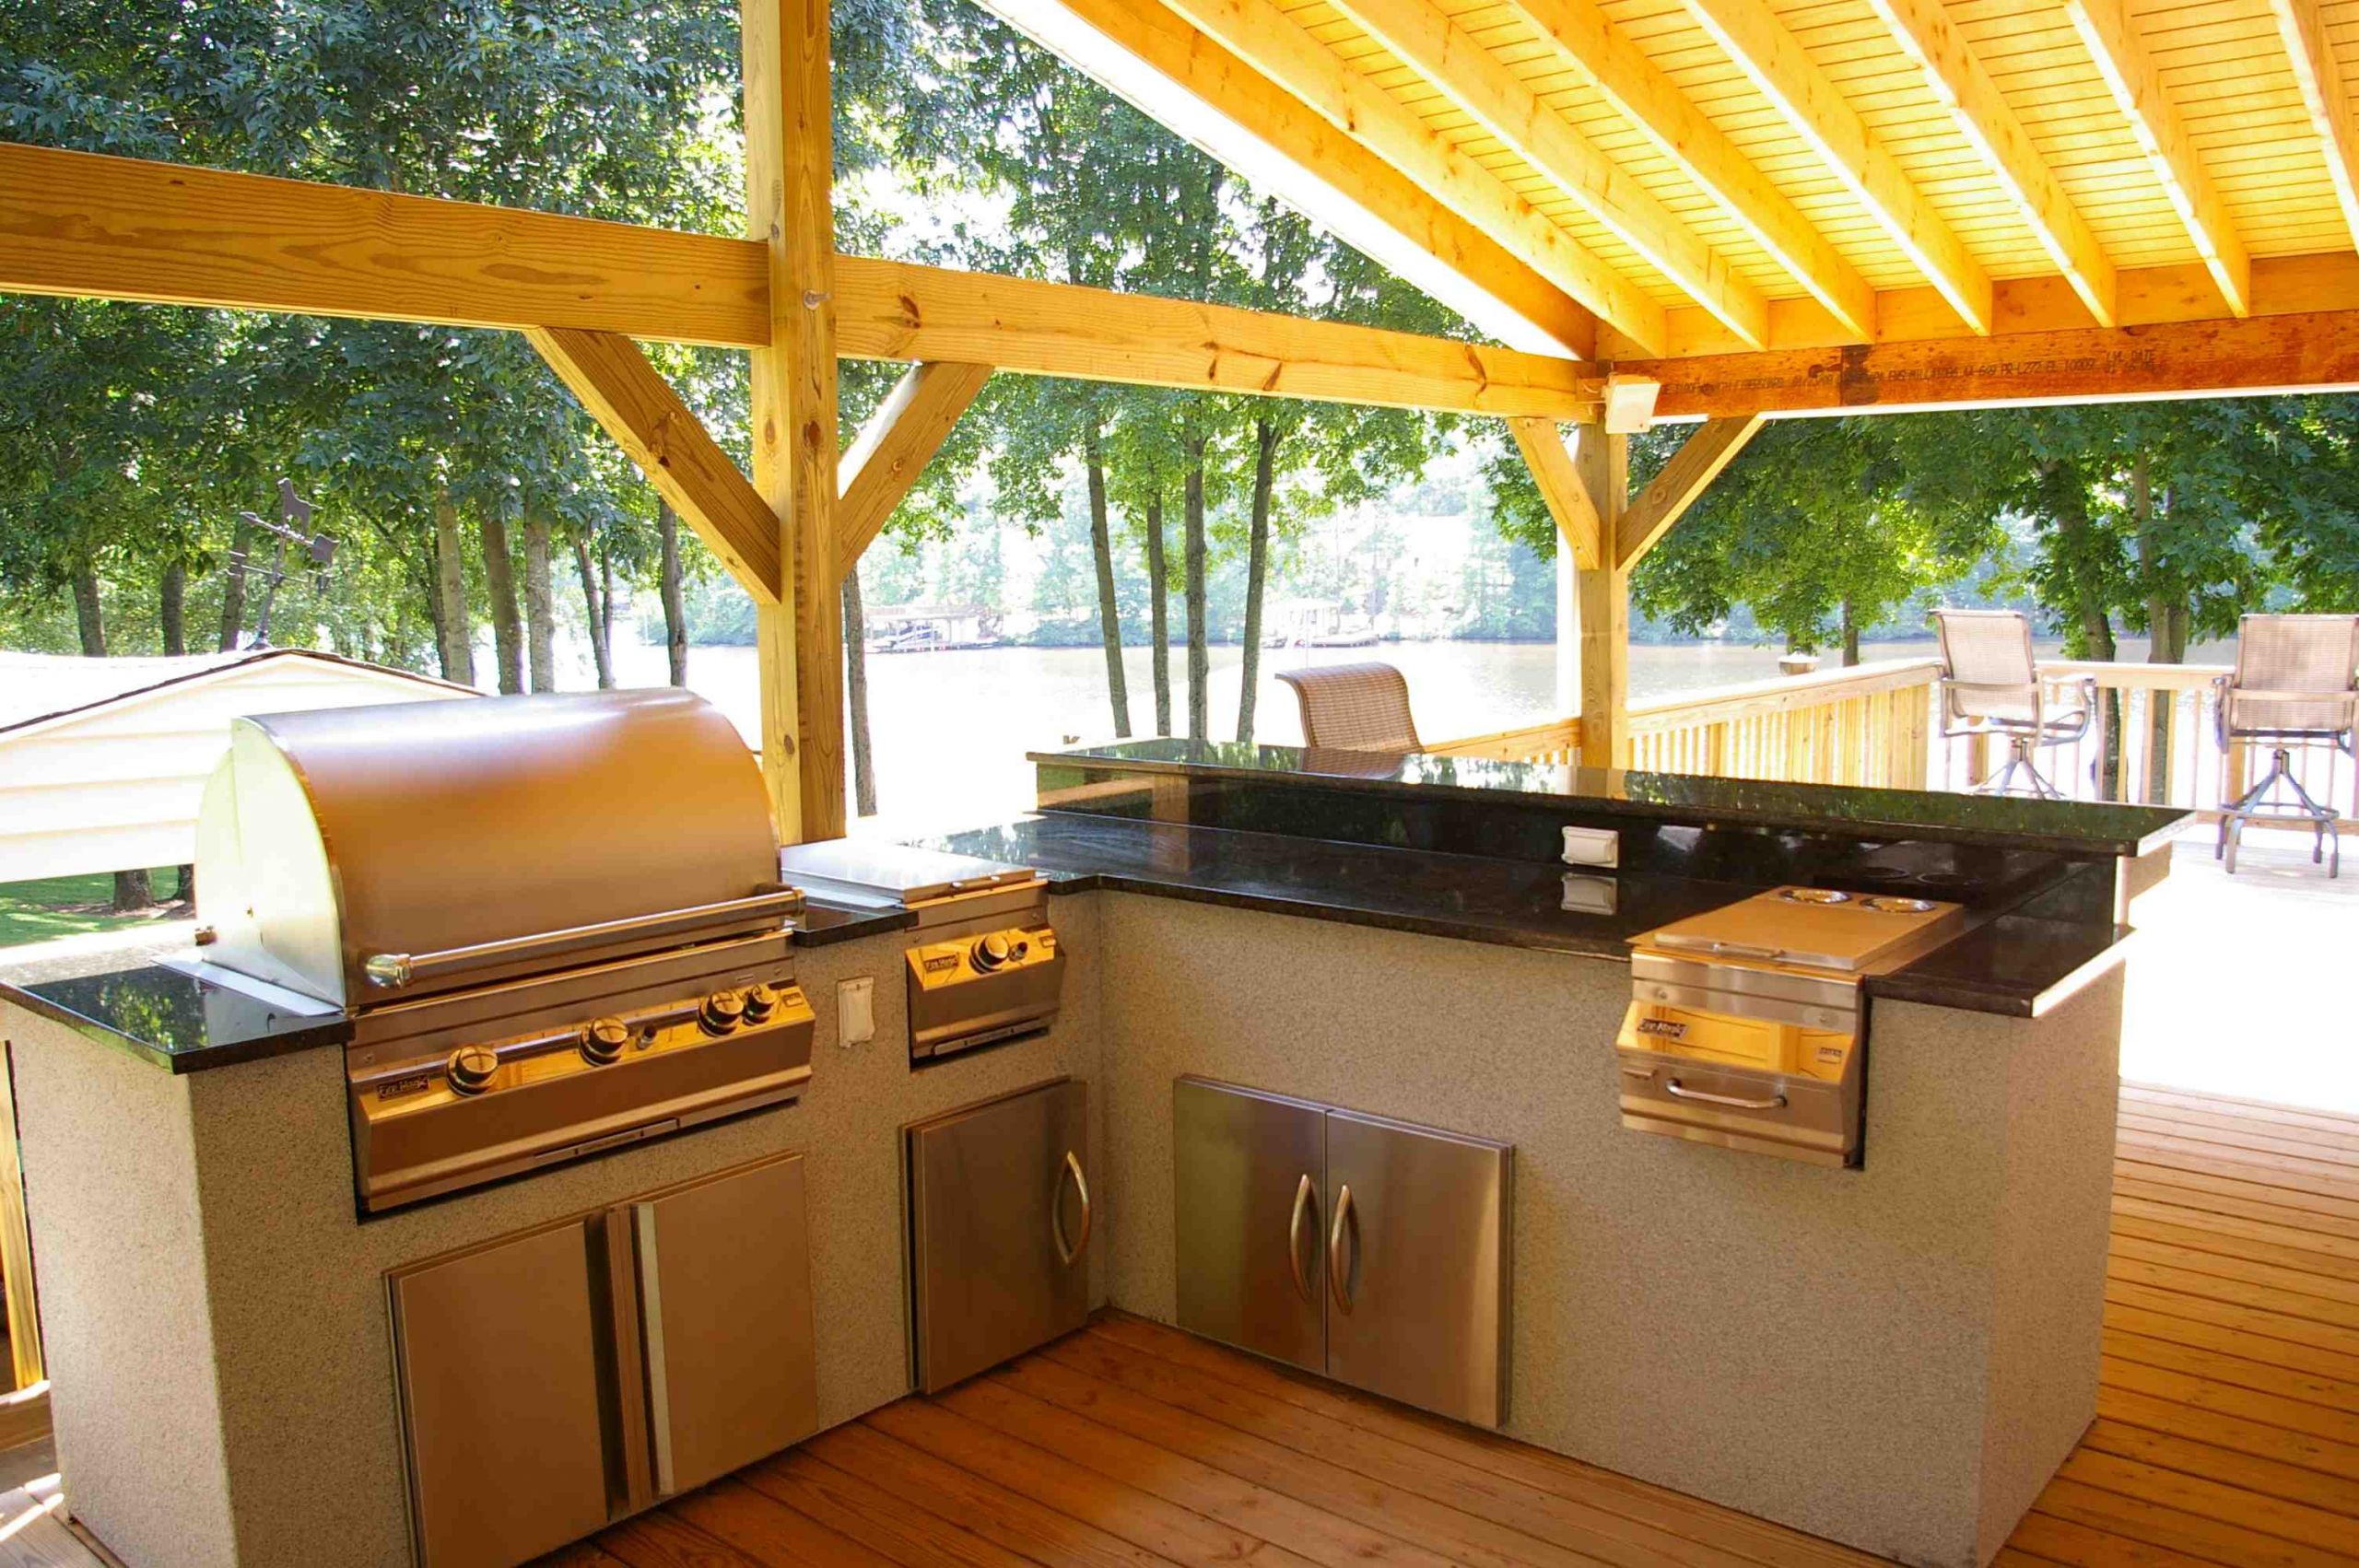 Outdoor Kitchen Blueprints
 Outdoor Kitchen Design How to Design Outdoor Kitchen